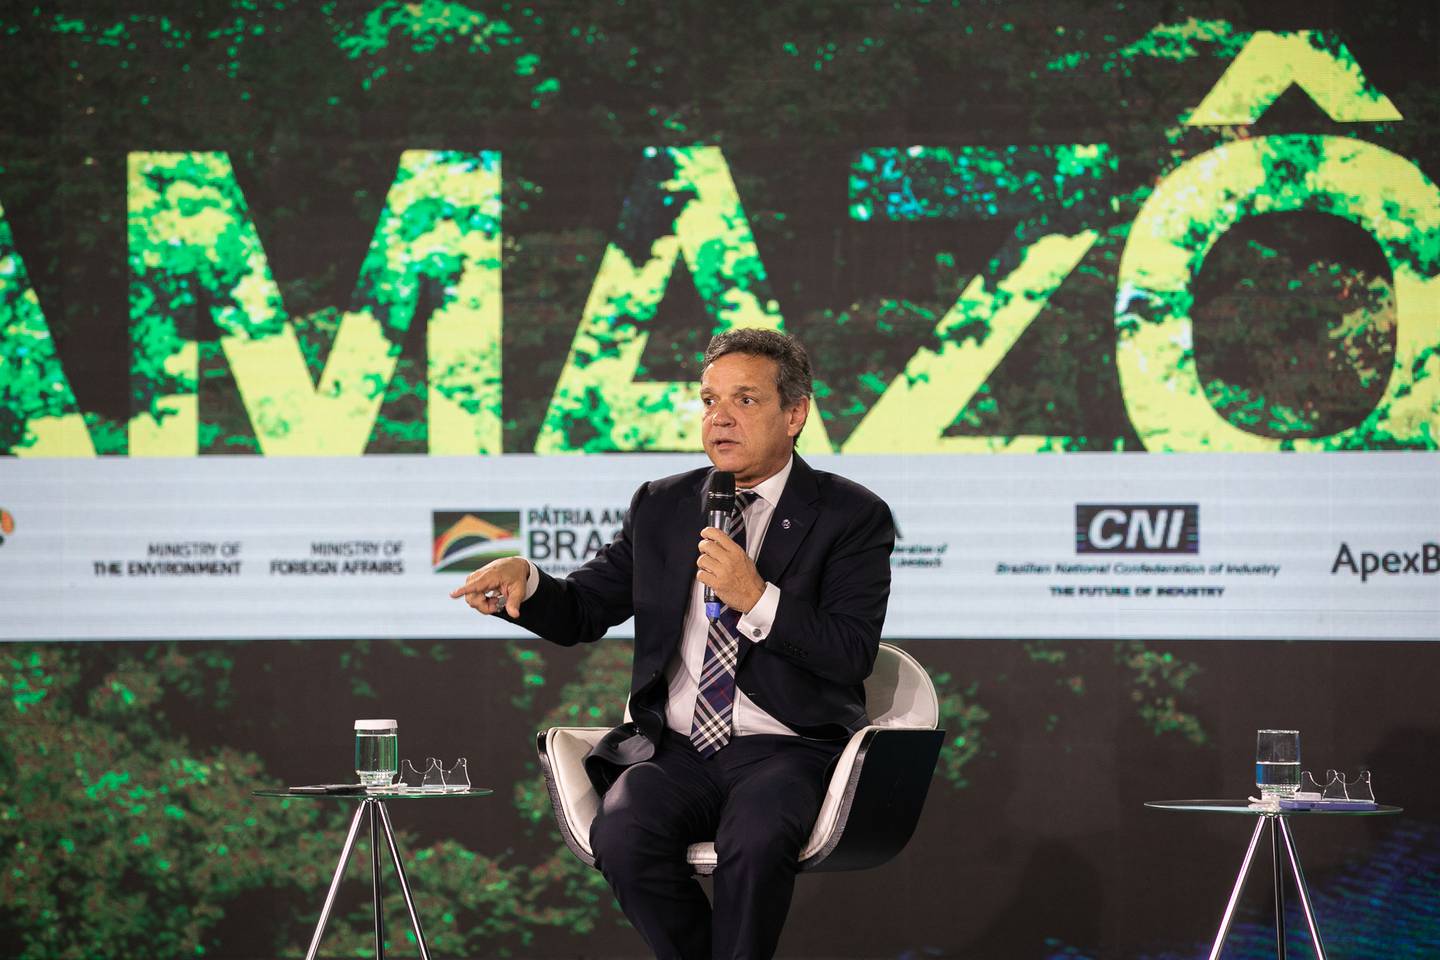 Caio Paes de Andrade, secretário de Desburocratização do Ministério da Economia, durante a COP 26, em novembro de 2021